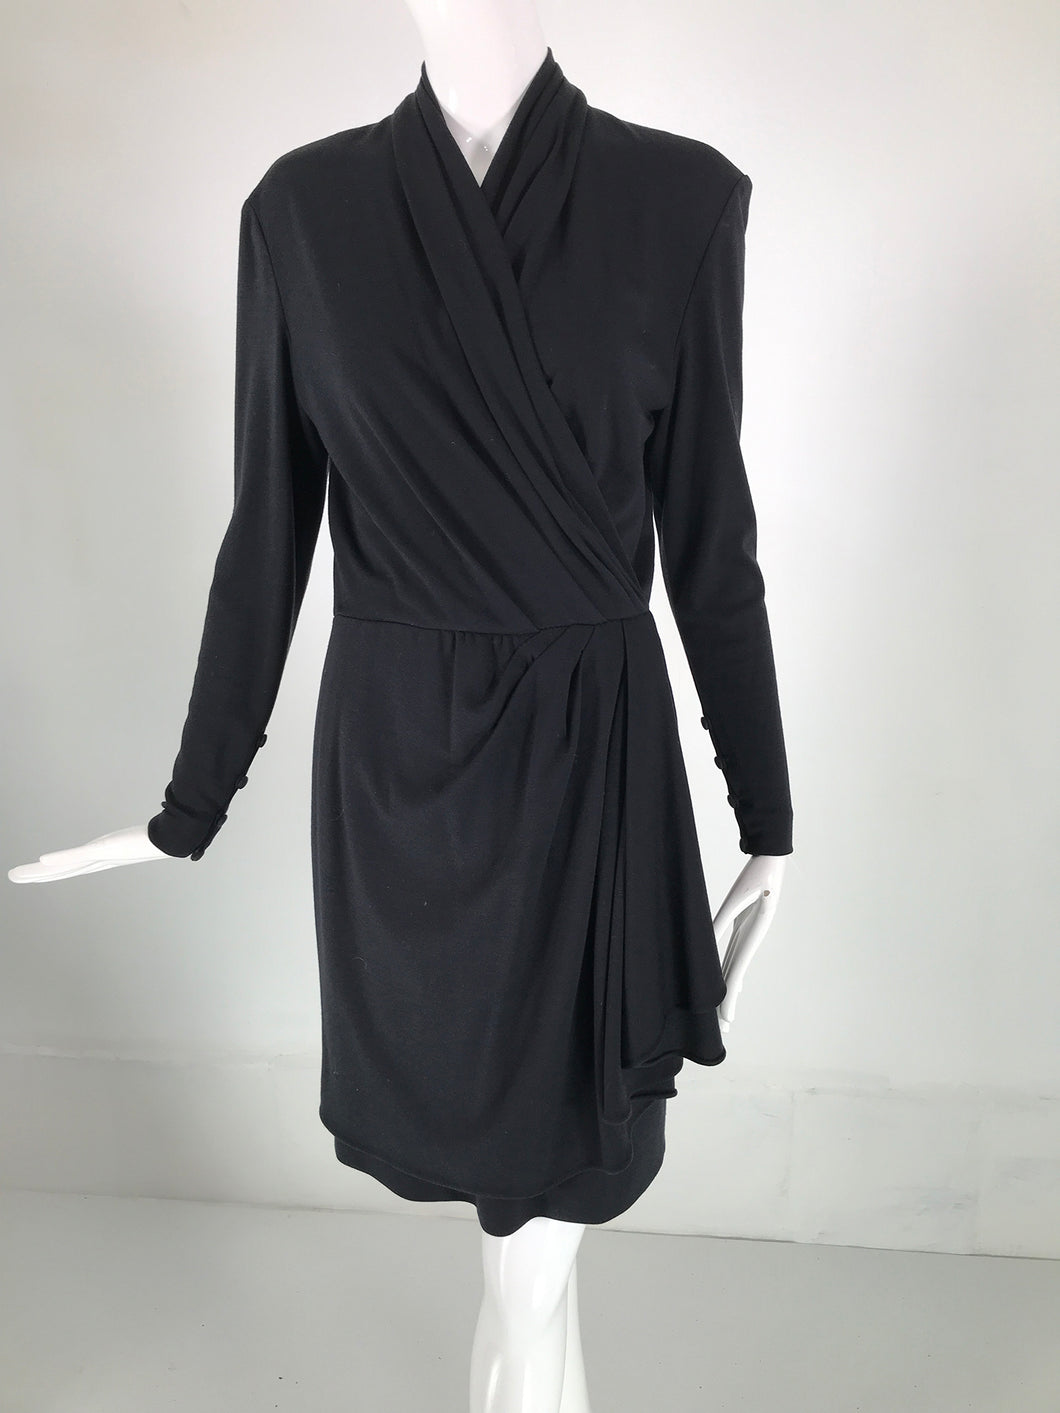 Celine Black Wool Jersey Surplice Bodice Draped Skirt 1990s